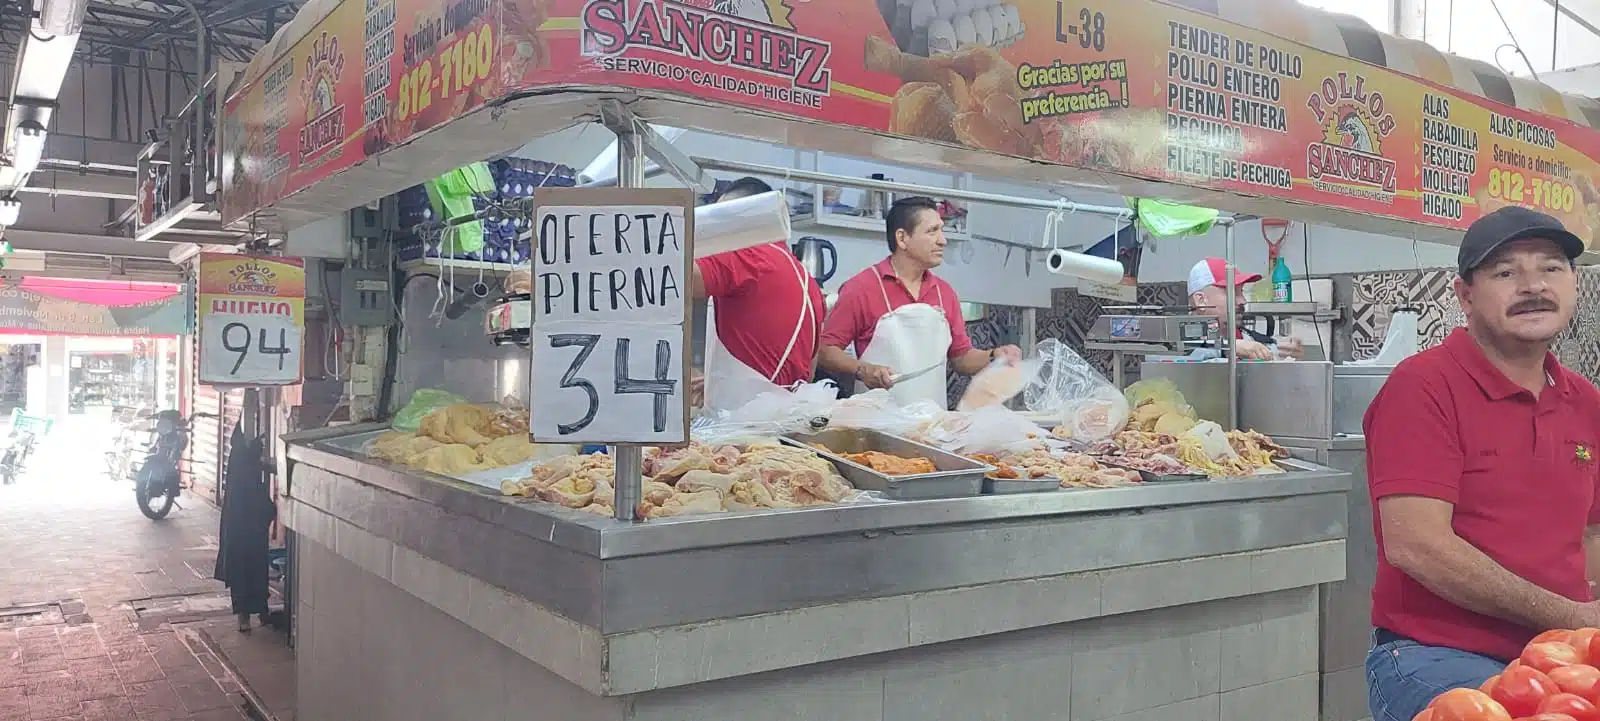 ¡Ahora la pierna de pollo! Incrementa el precio en Sinaloa por brote de influenza aviar Comerciantes